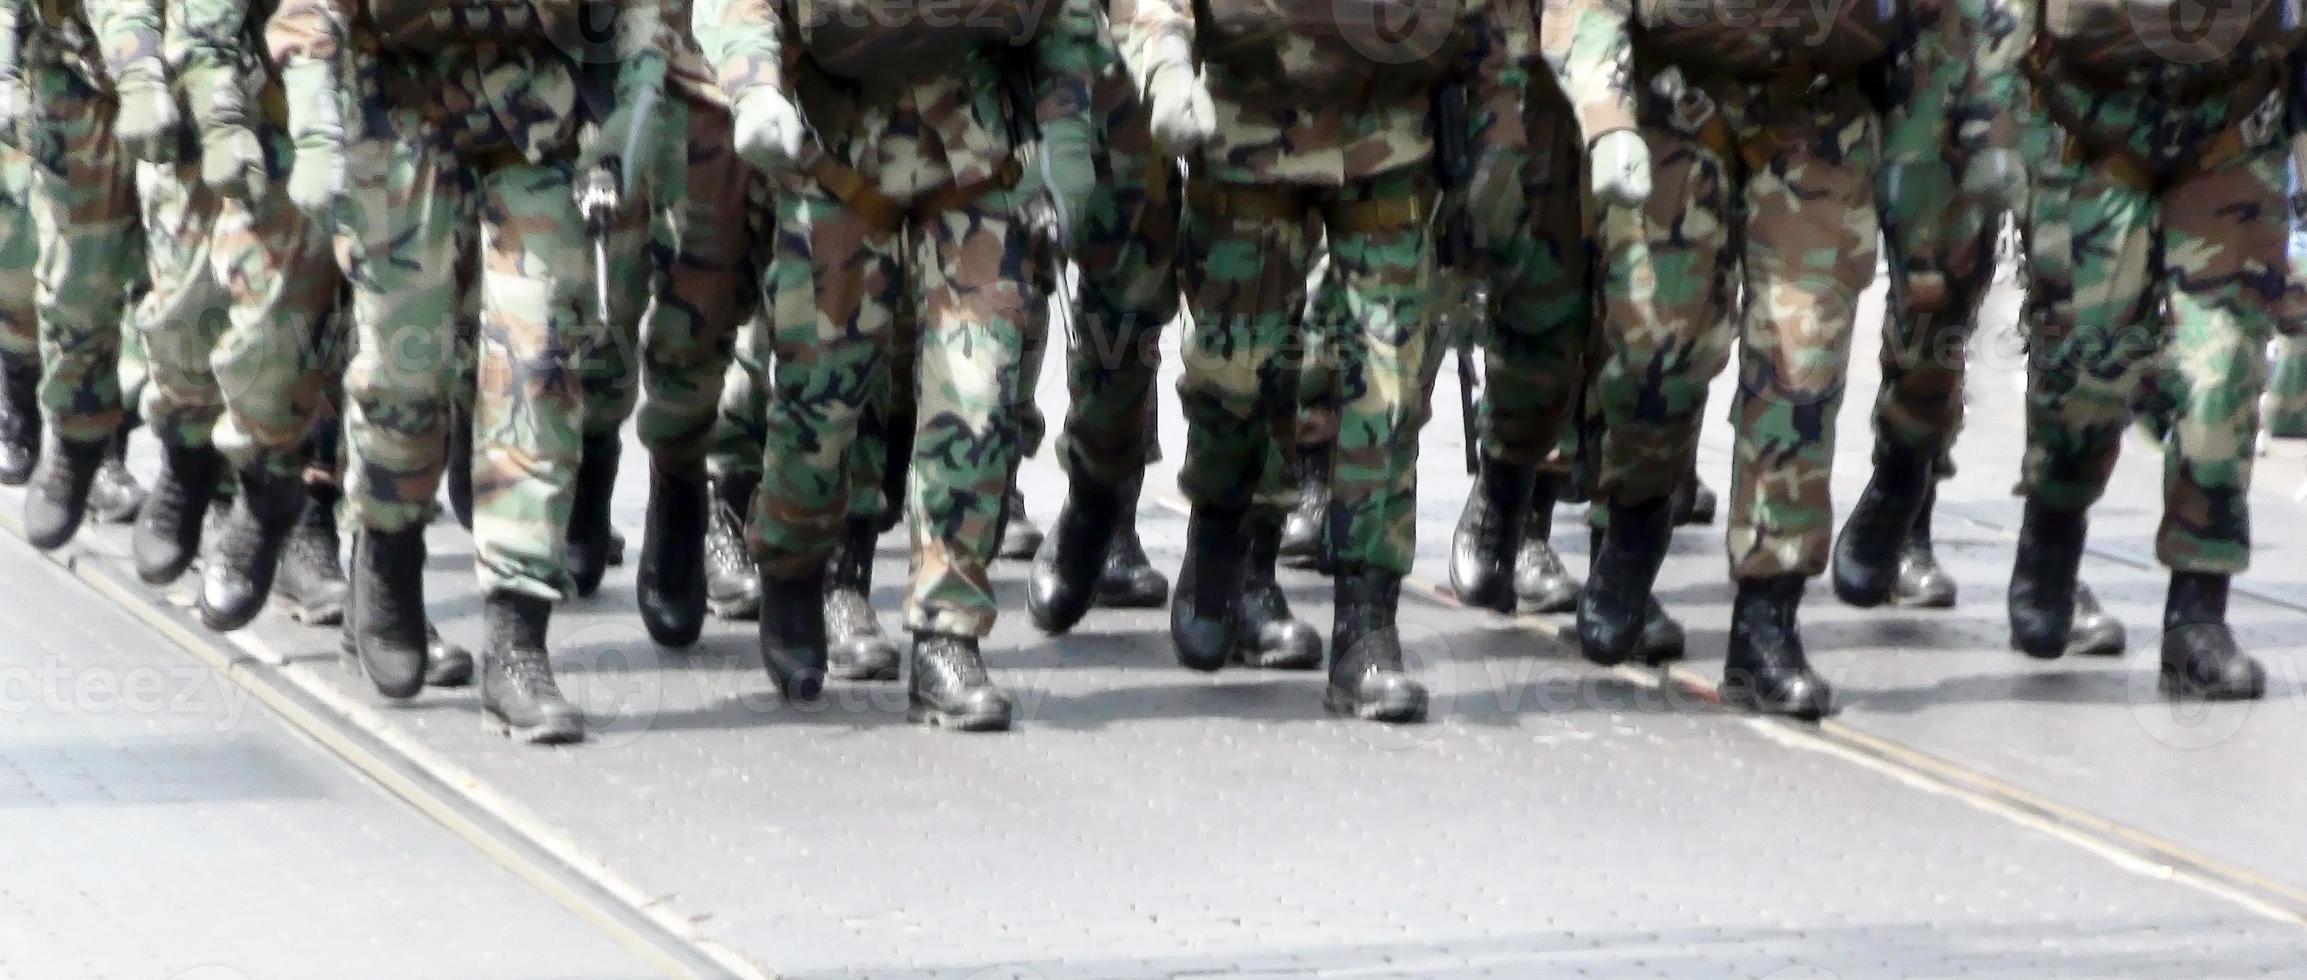 Truppen marschieren foto